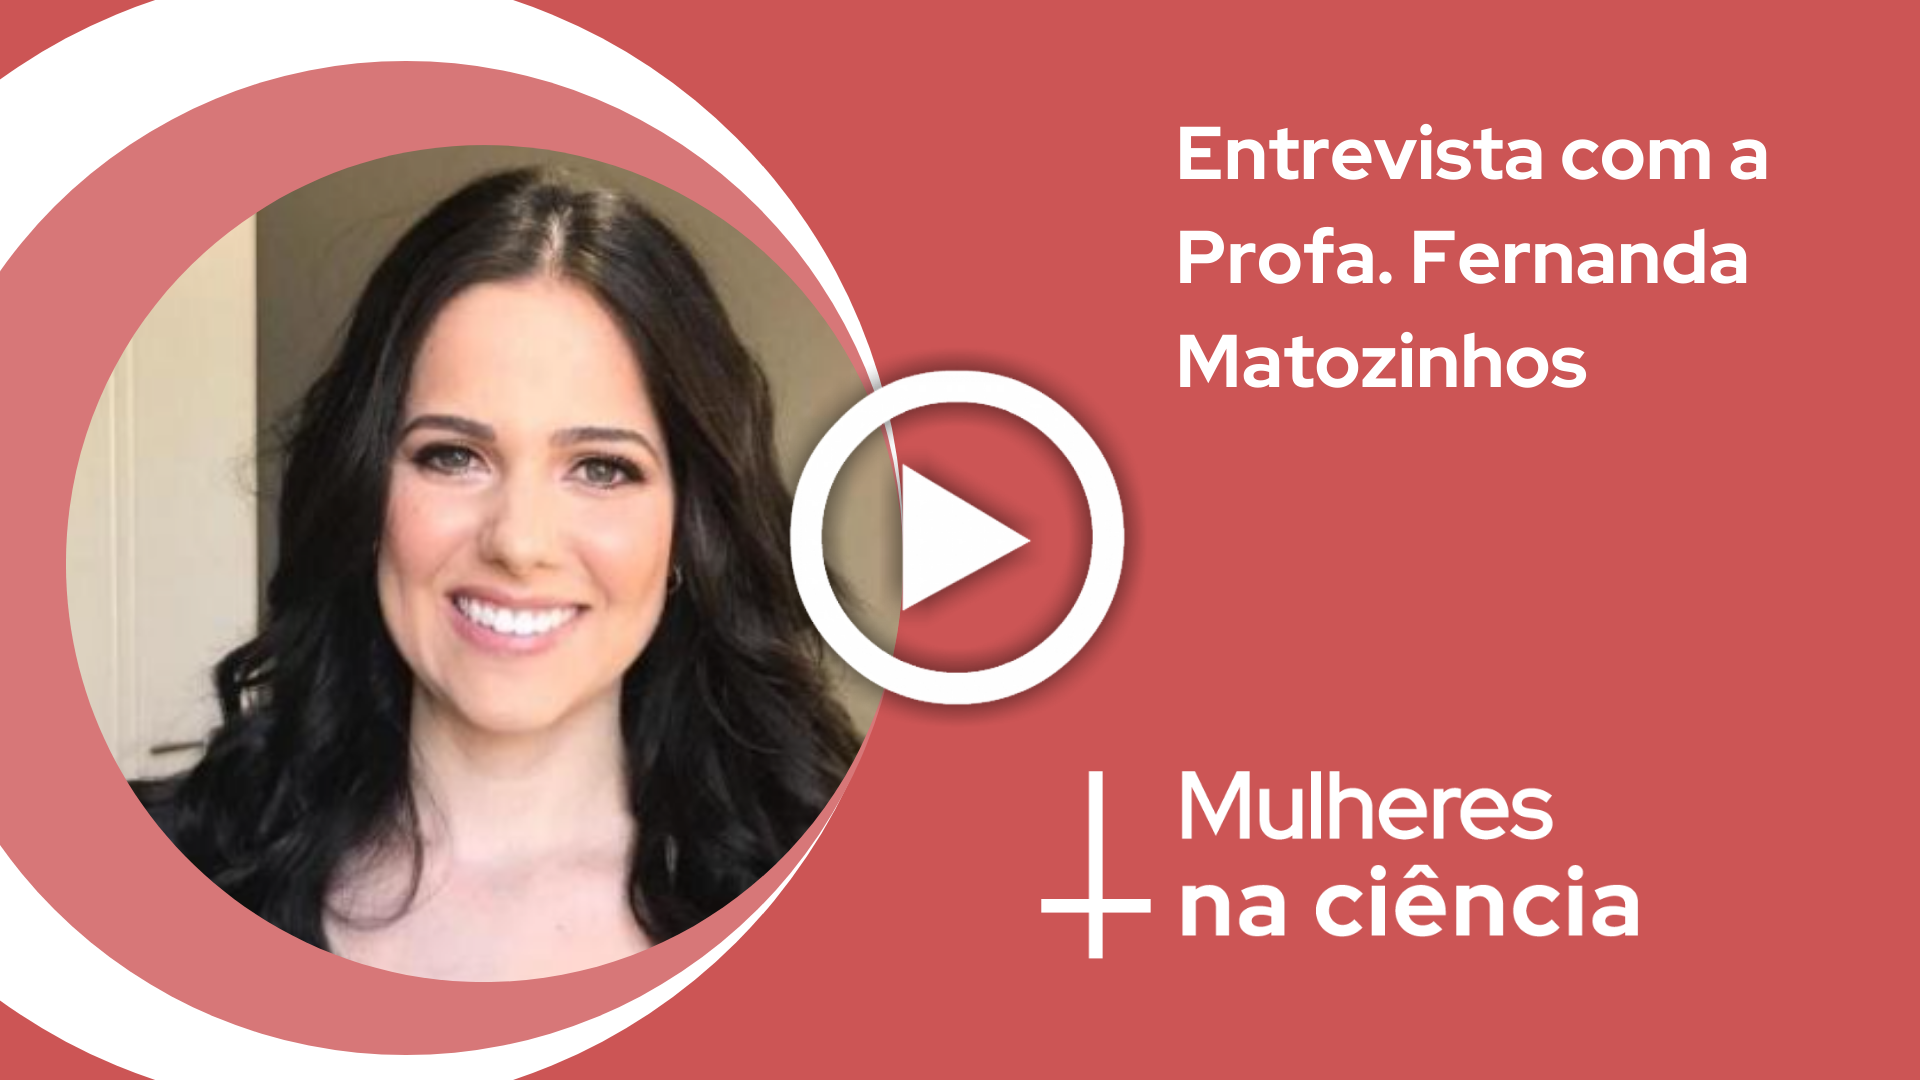  Mulheres na Ciência: Entrevista com Fernanda Matozinhos